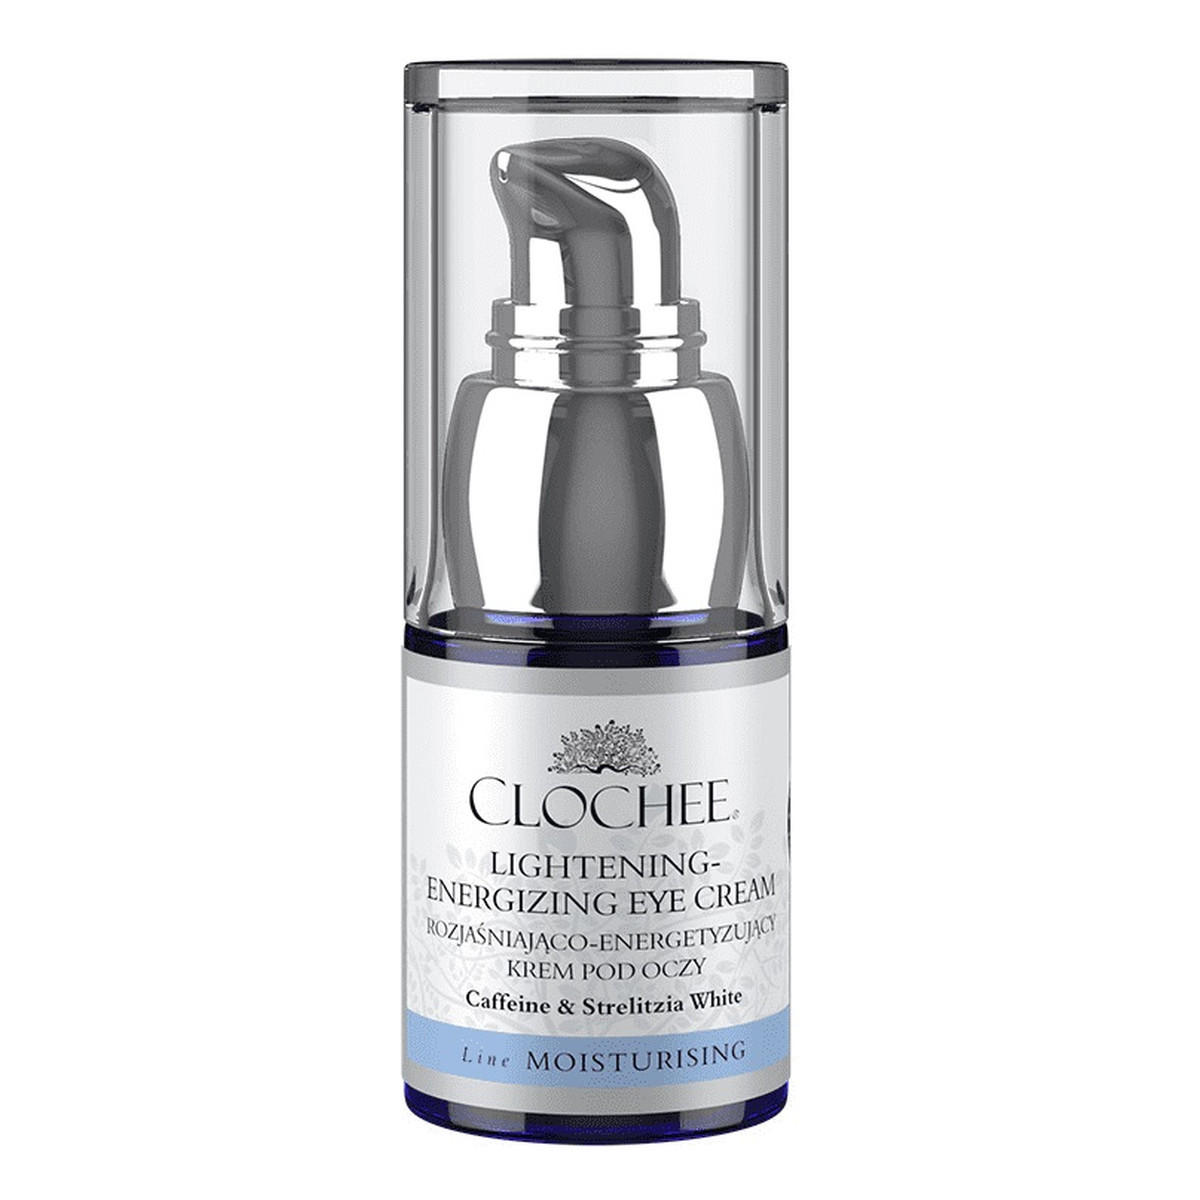 Clochee Lightening Energizing Eye Cream rozjaśniająco-energetyzujący Krem pod oczy 15ml